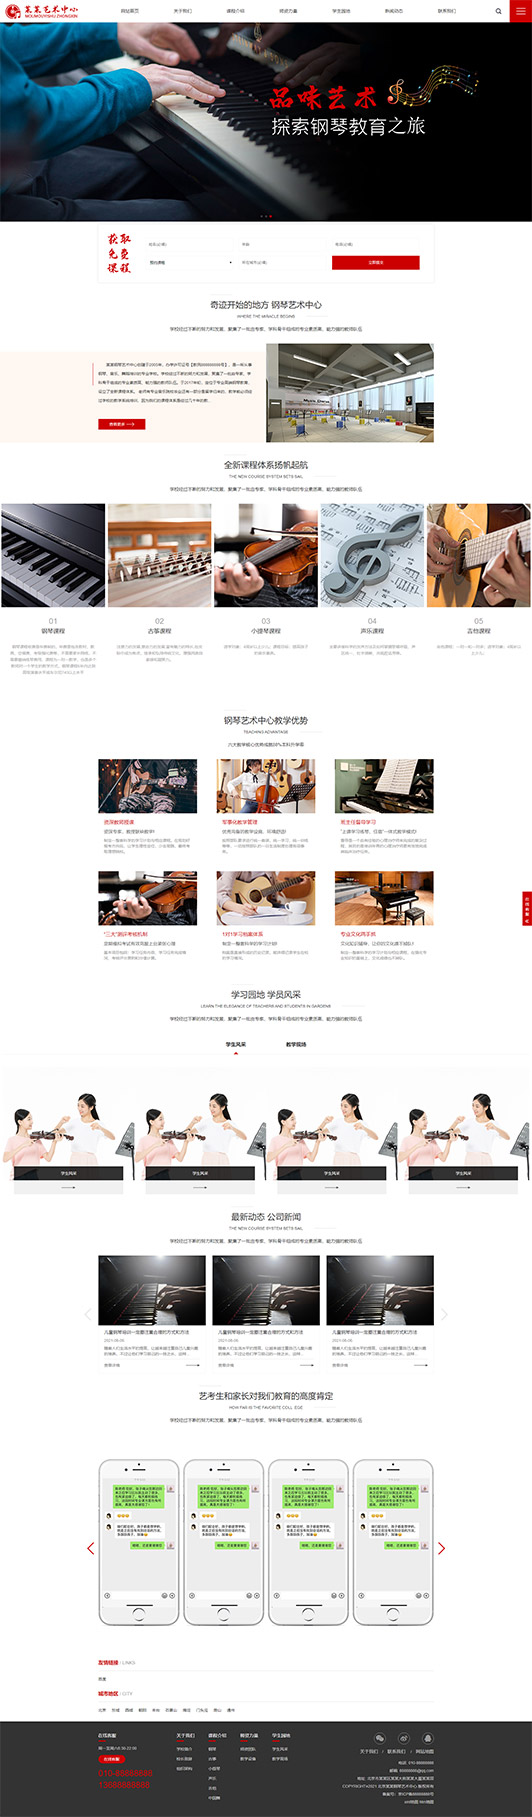 广西钢琴艺术培训公司响应式企业网站